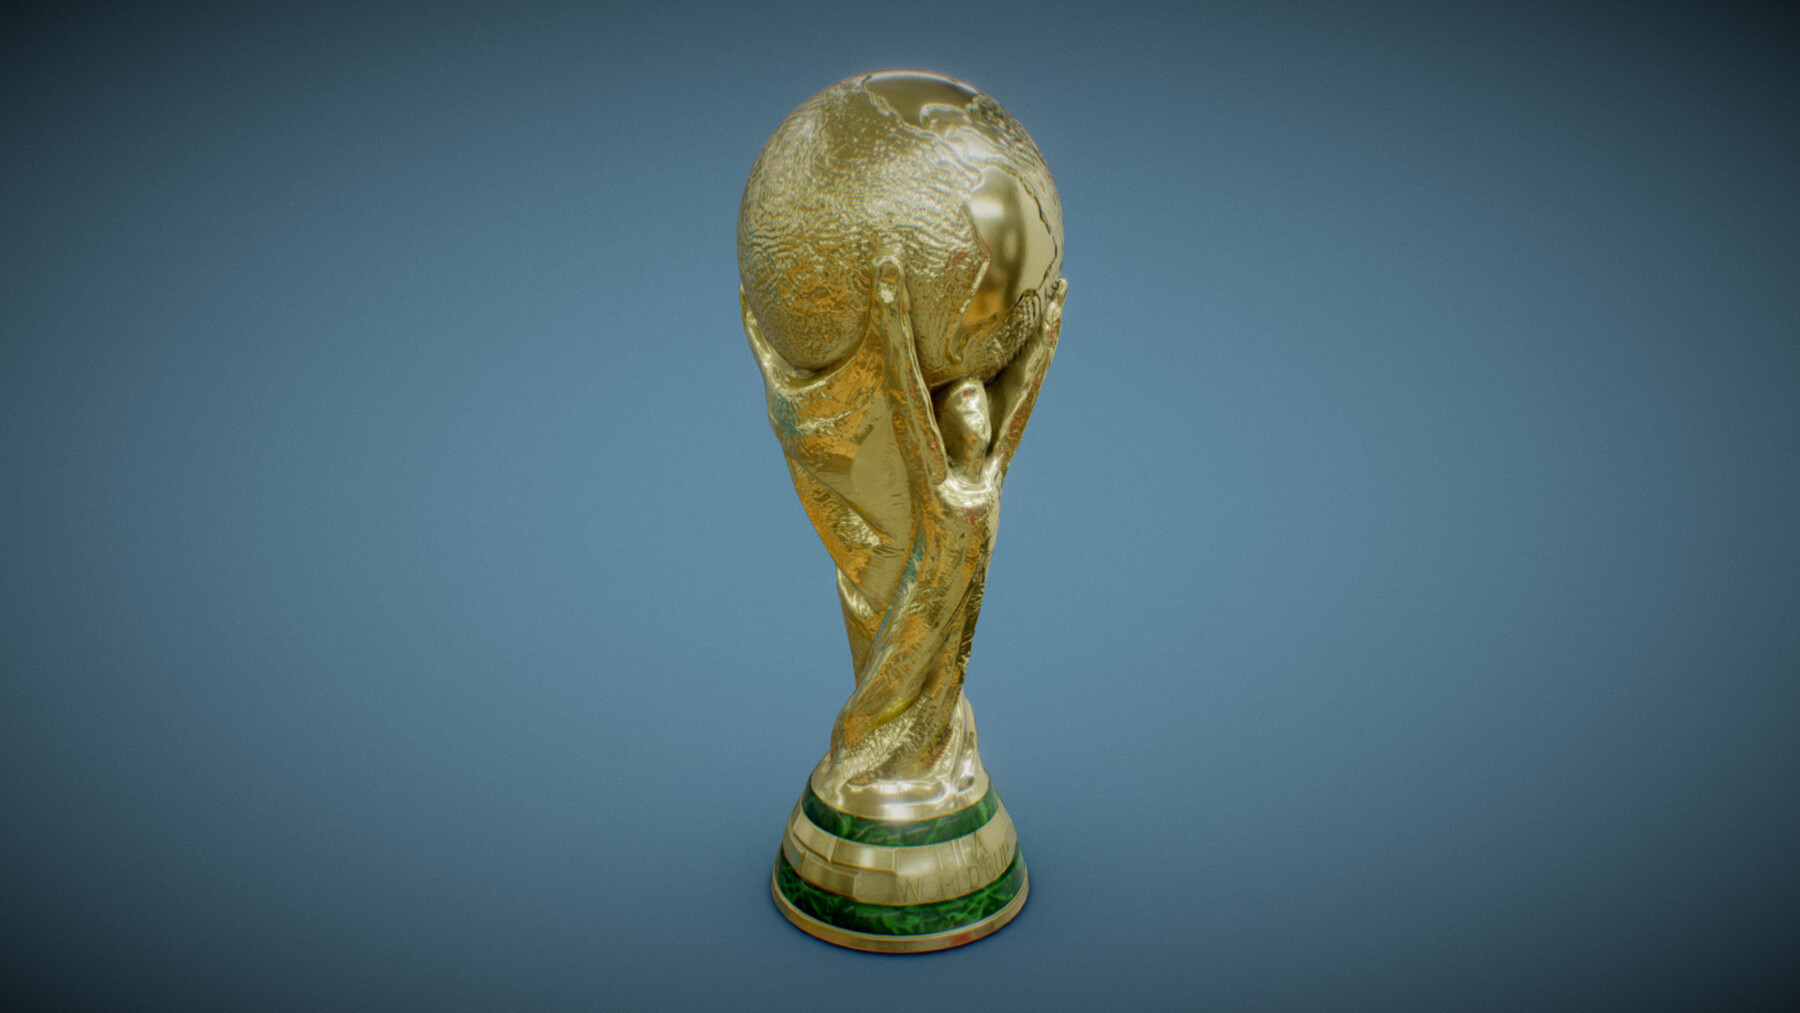 FIFA WORLD CUP トロフィー